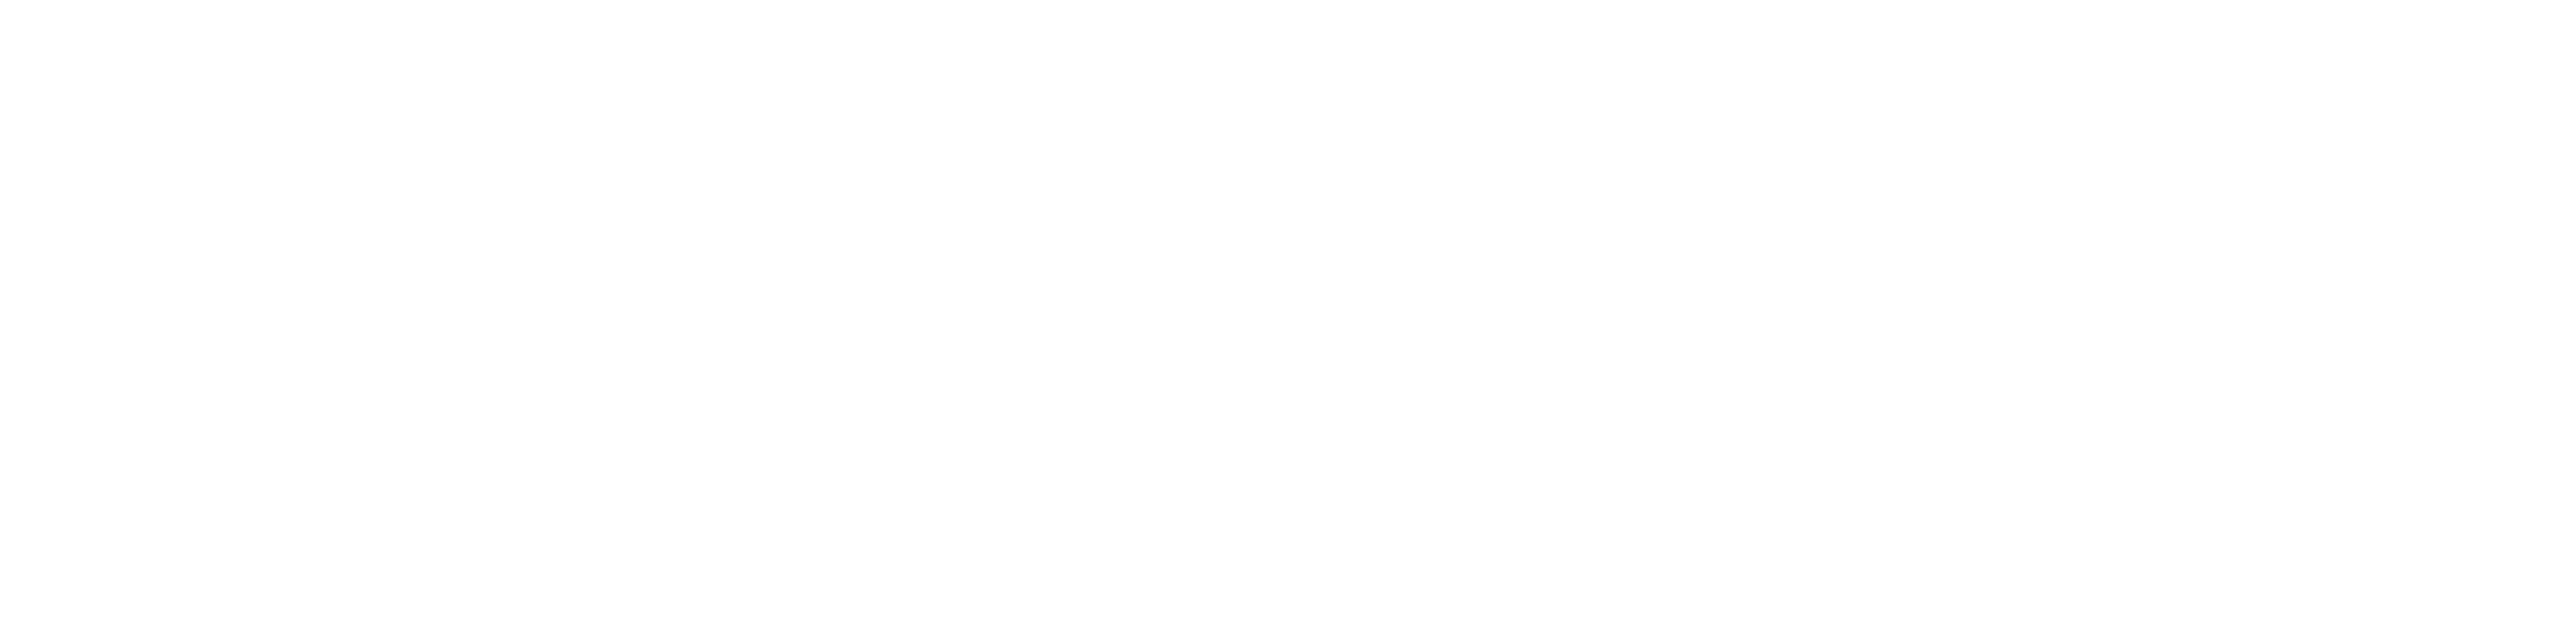 Humanize_IT_Horizontal_White-4